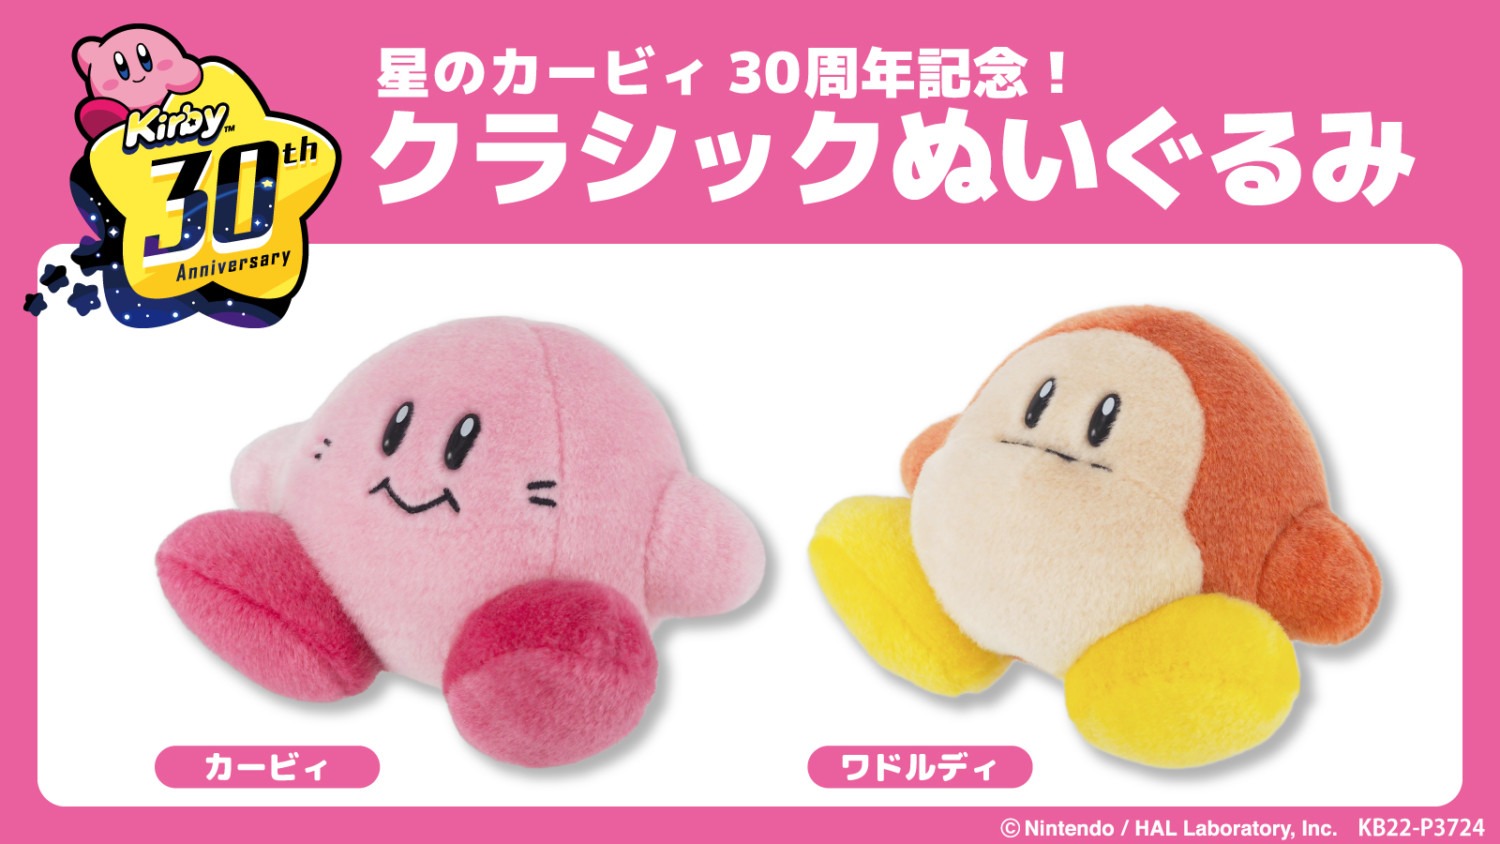 Kirby, annunciata una nuova linea di peluche e gadget per il 30°  anniversario - Pokémon Millennium